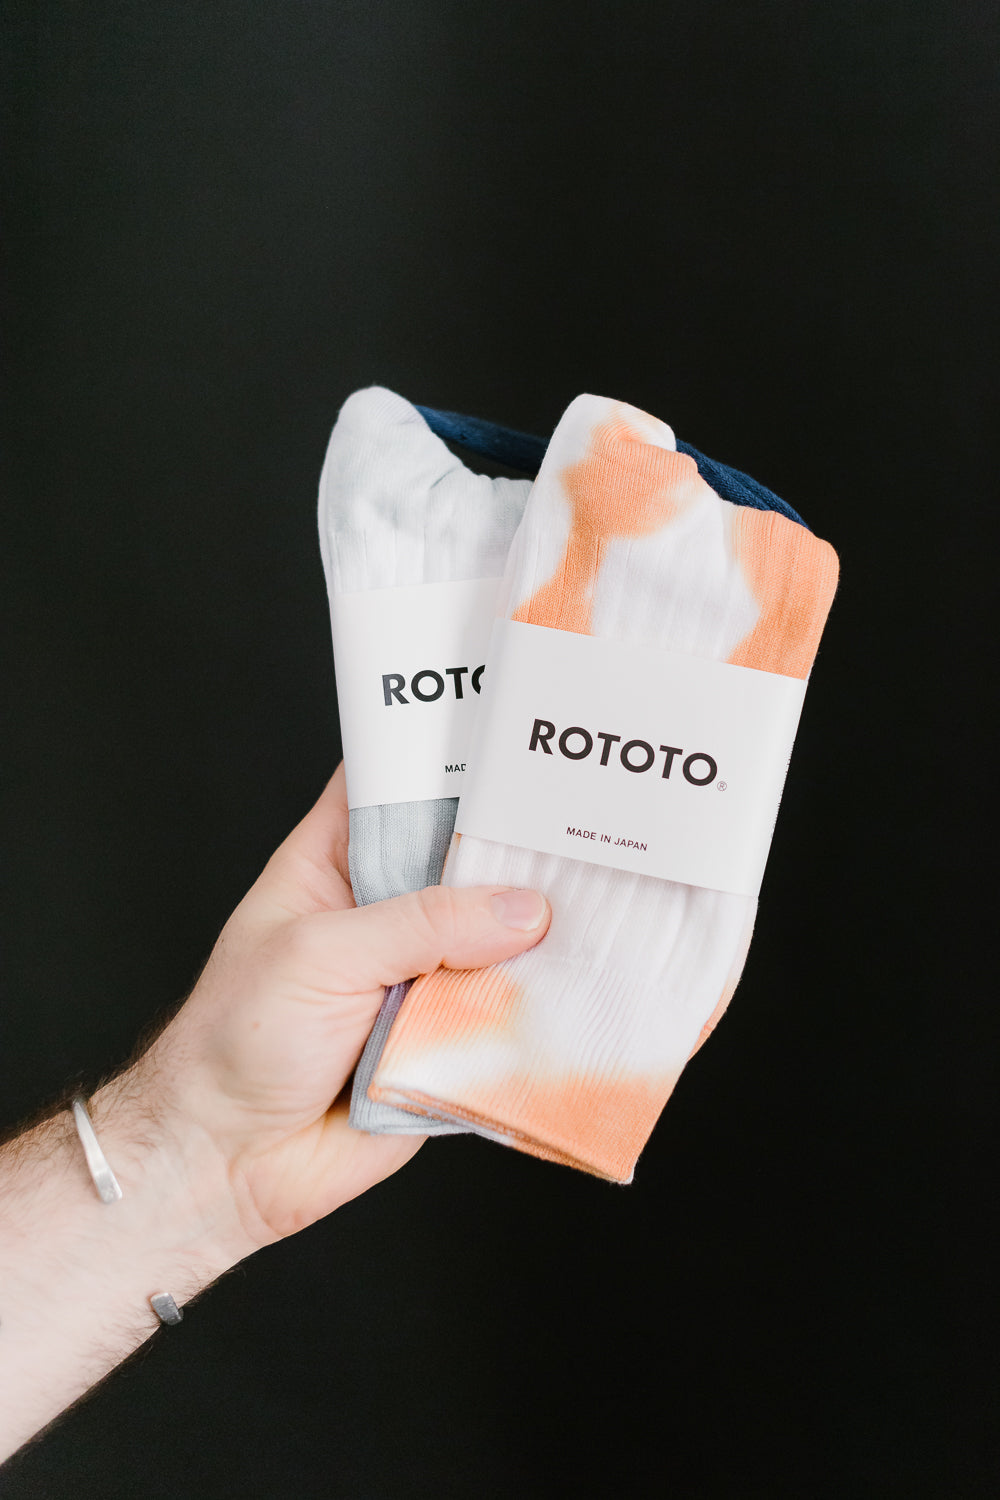 R1490 - Tie Dye Formal Crew Socks - Light Orange, White